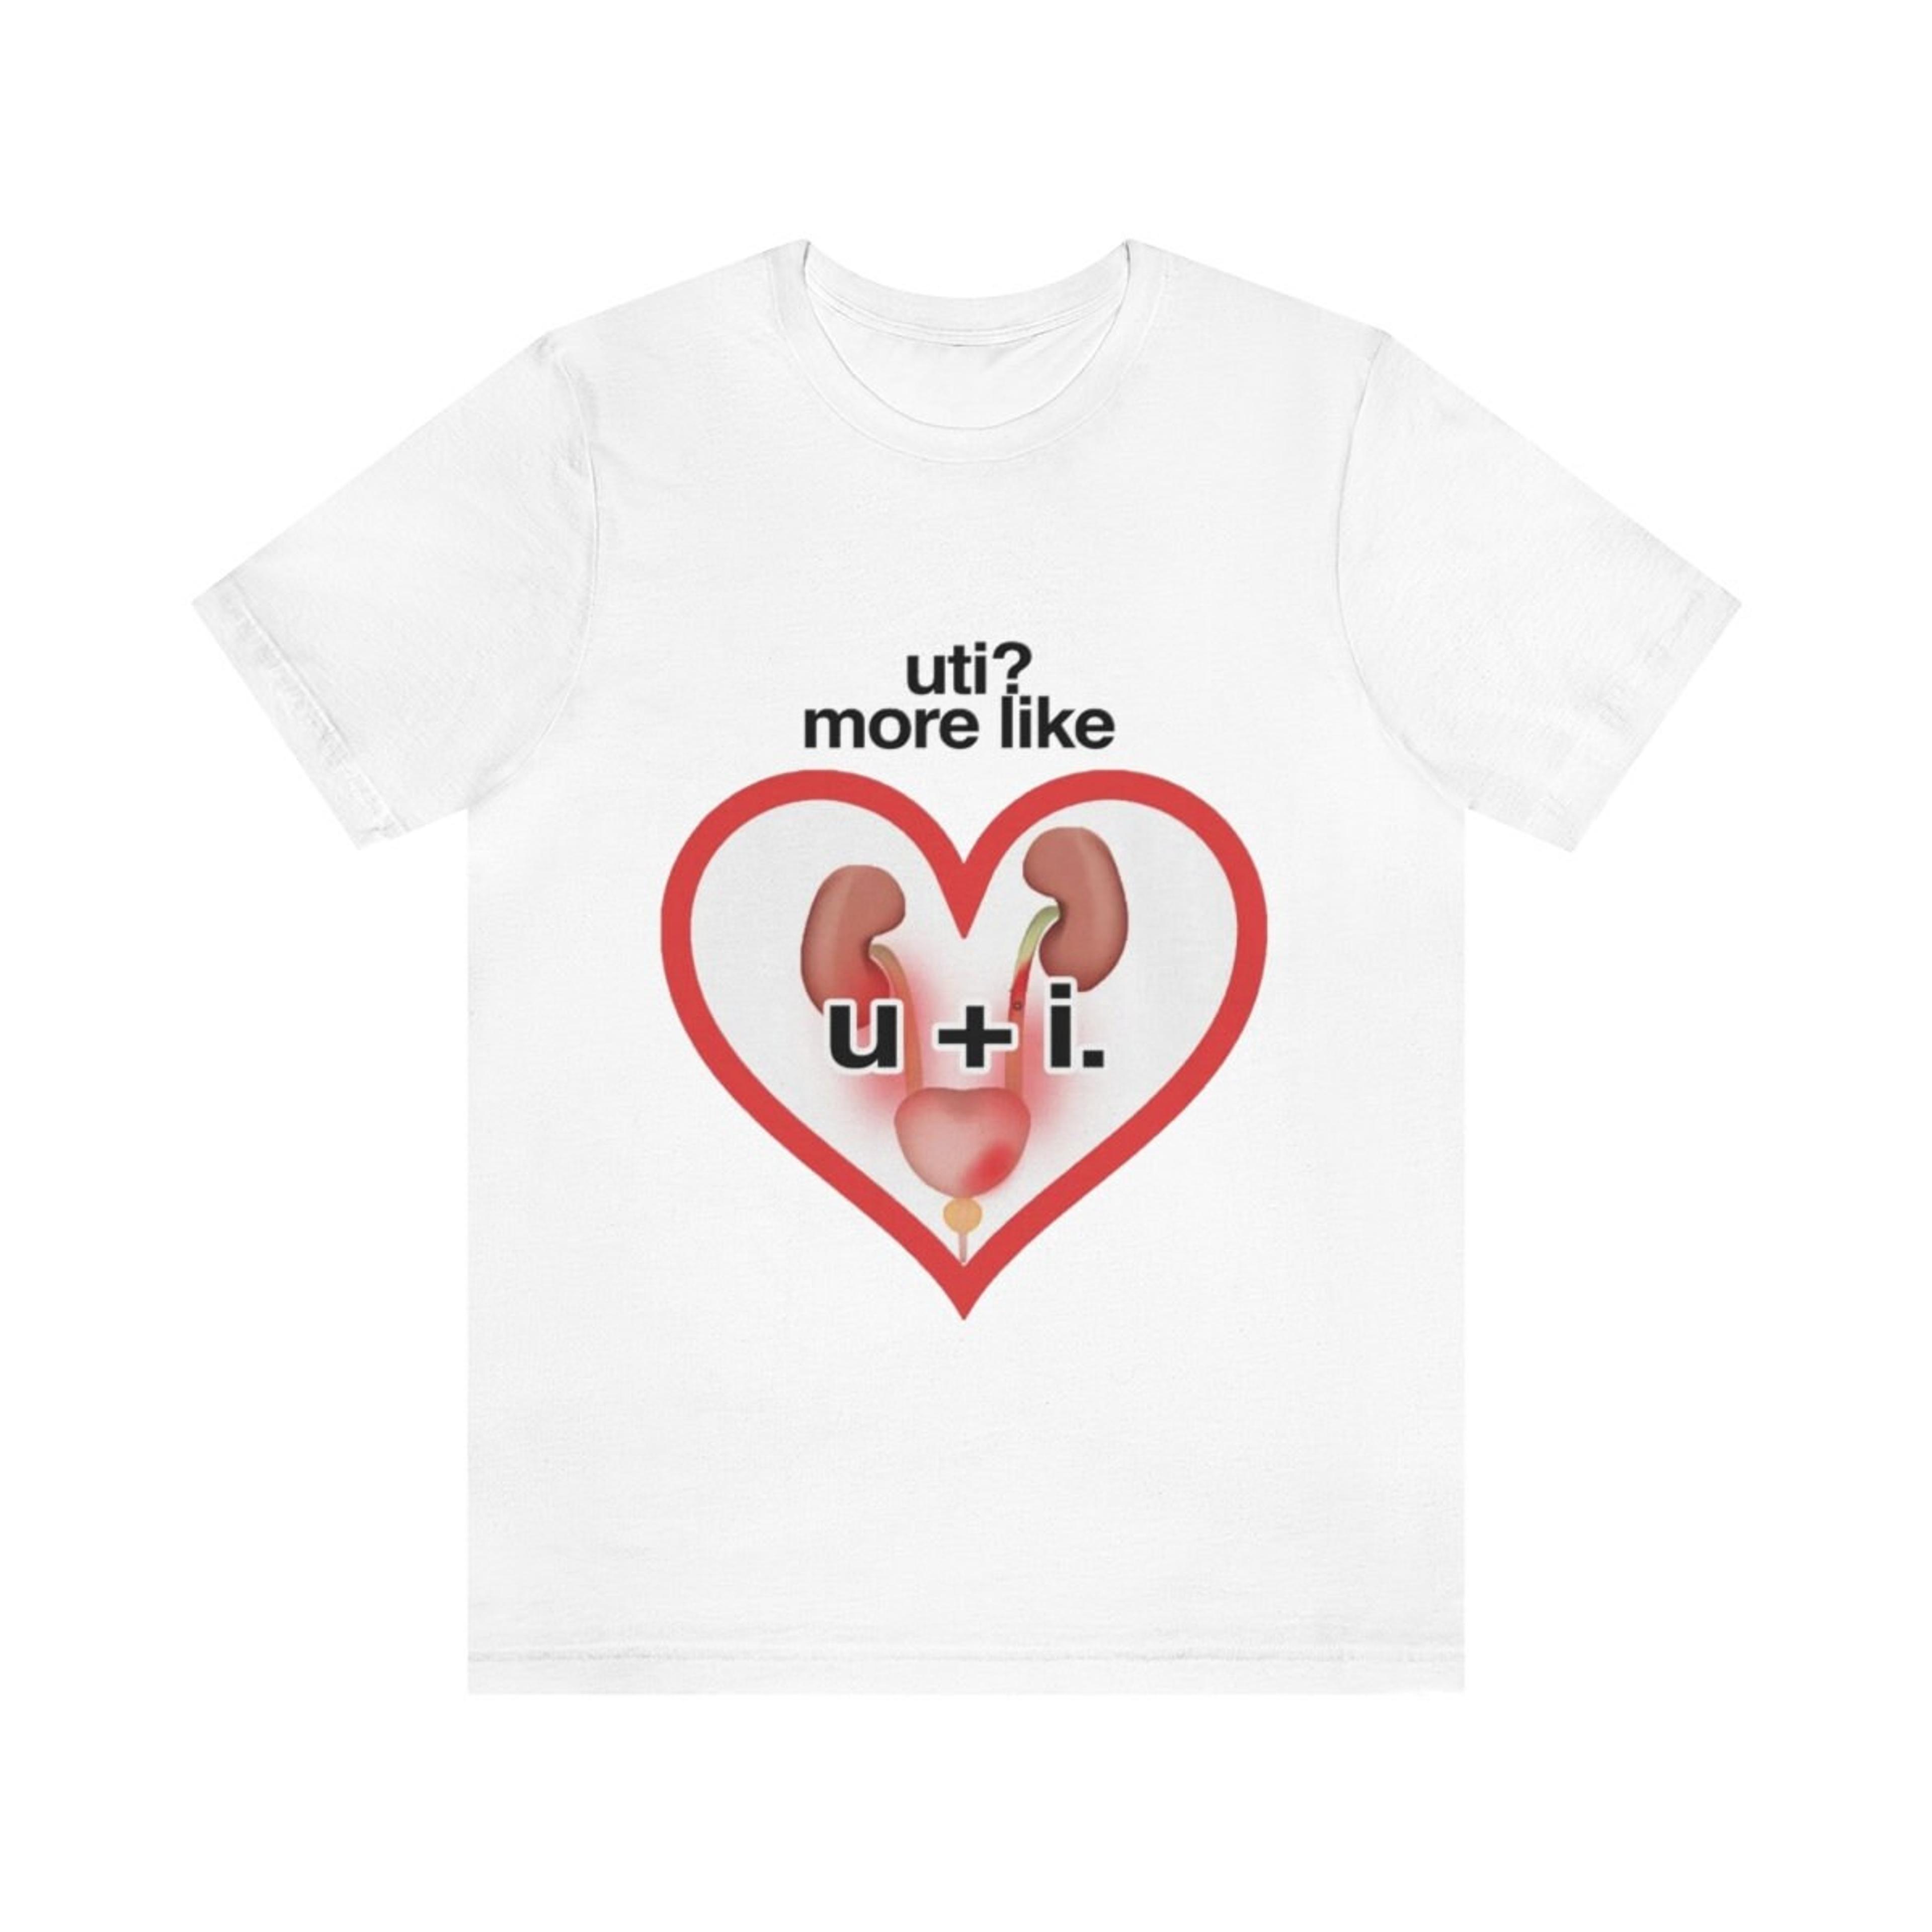 UI Shirt Uti More Like Shirt Uti More Like Sweatshirt - Etsy